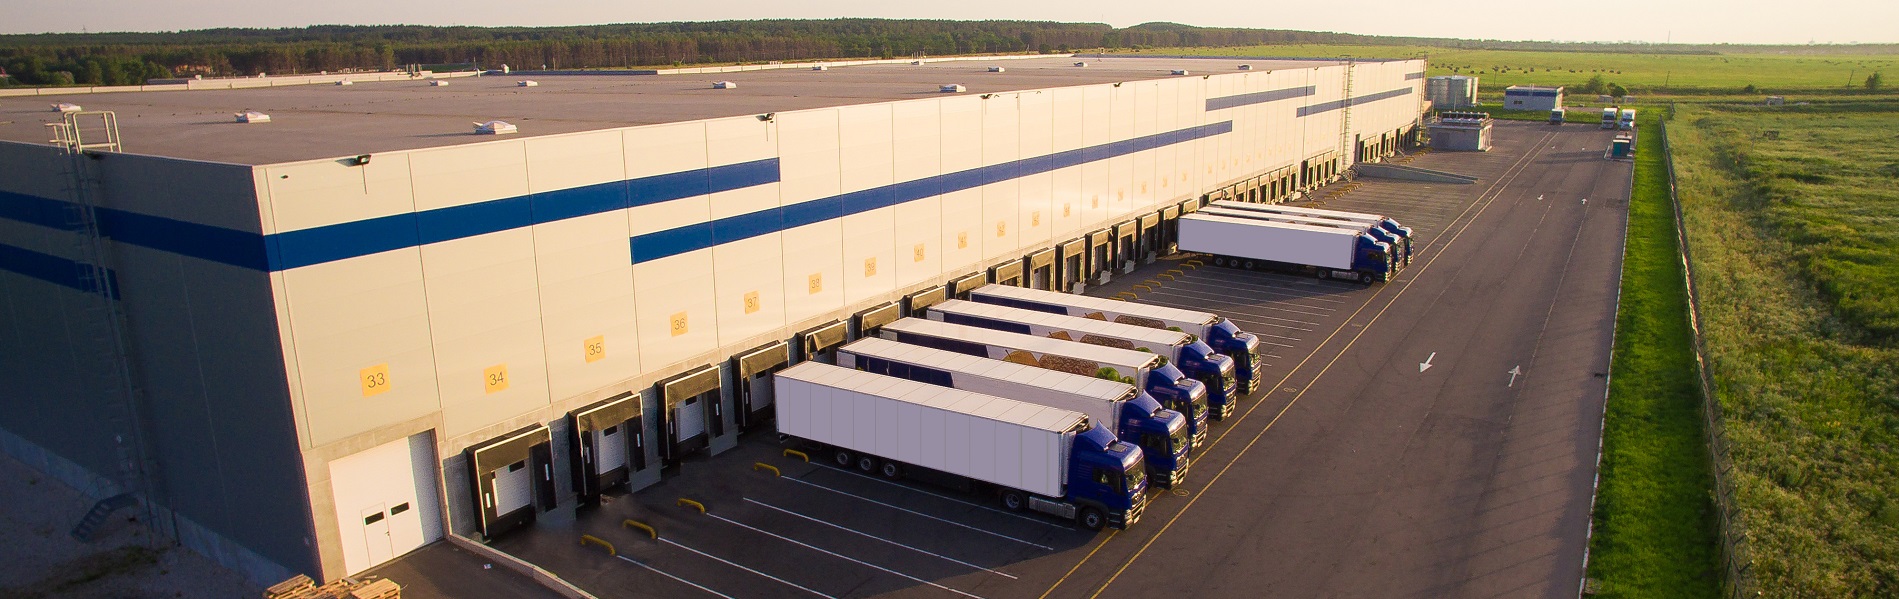 En stor terminal med lastebiler plassert i et grønt beitelandskap | Eiendomsservice på de fleste typer eiendommer | Coor